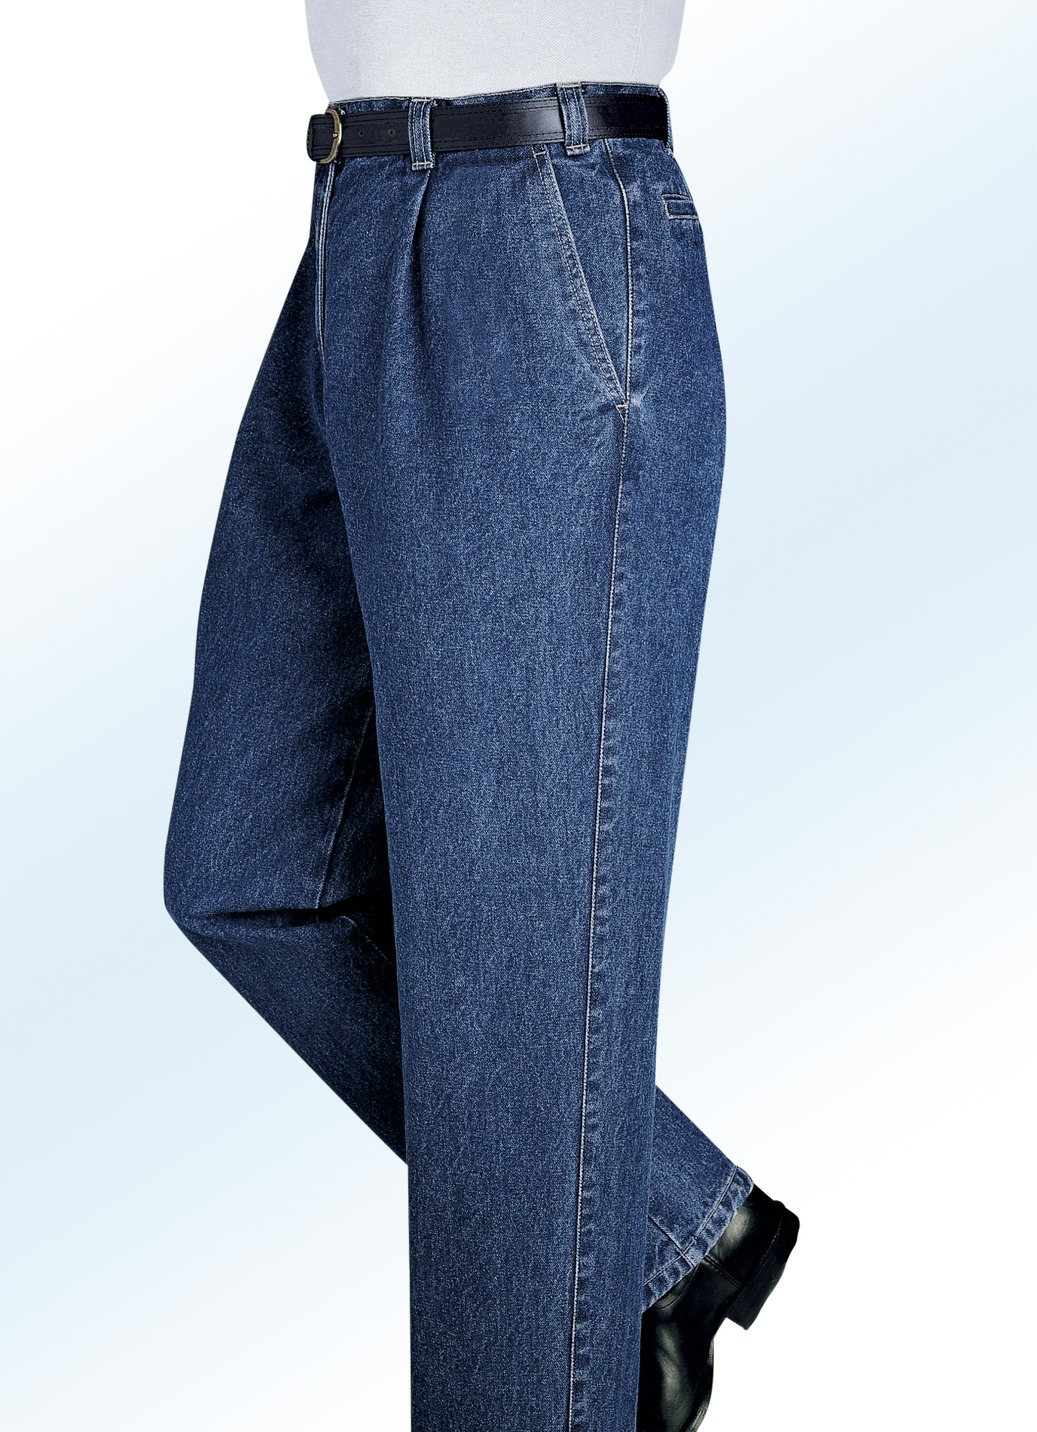 "Francesco Botti"-Jeans in 2 Qualitäten und 3 Farben, Qualität 2. Qualität, Jeansblau, Größe 55 von FRANCESCO BOTTI